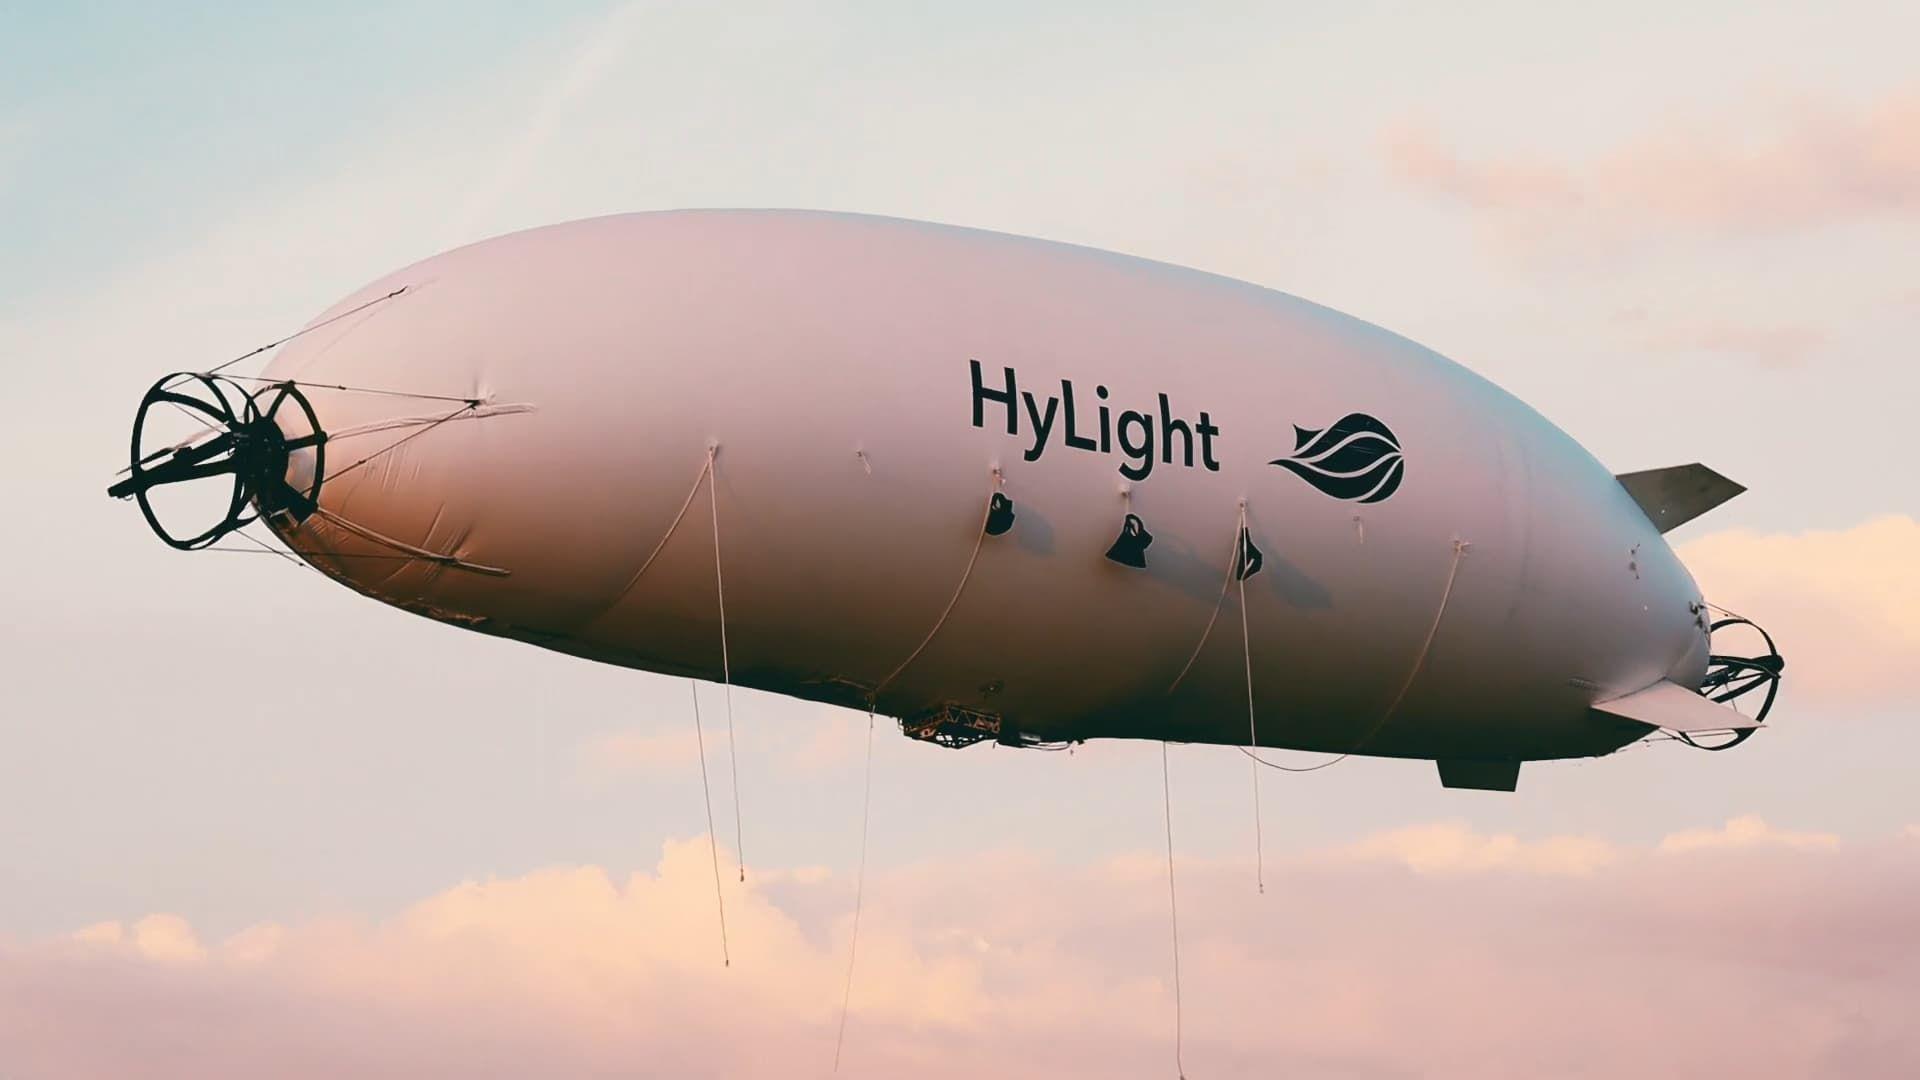 HyLight réalise une levée de fonds de 3,7 M€ pour son drone à hydrogène